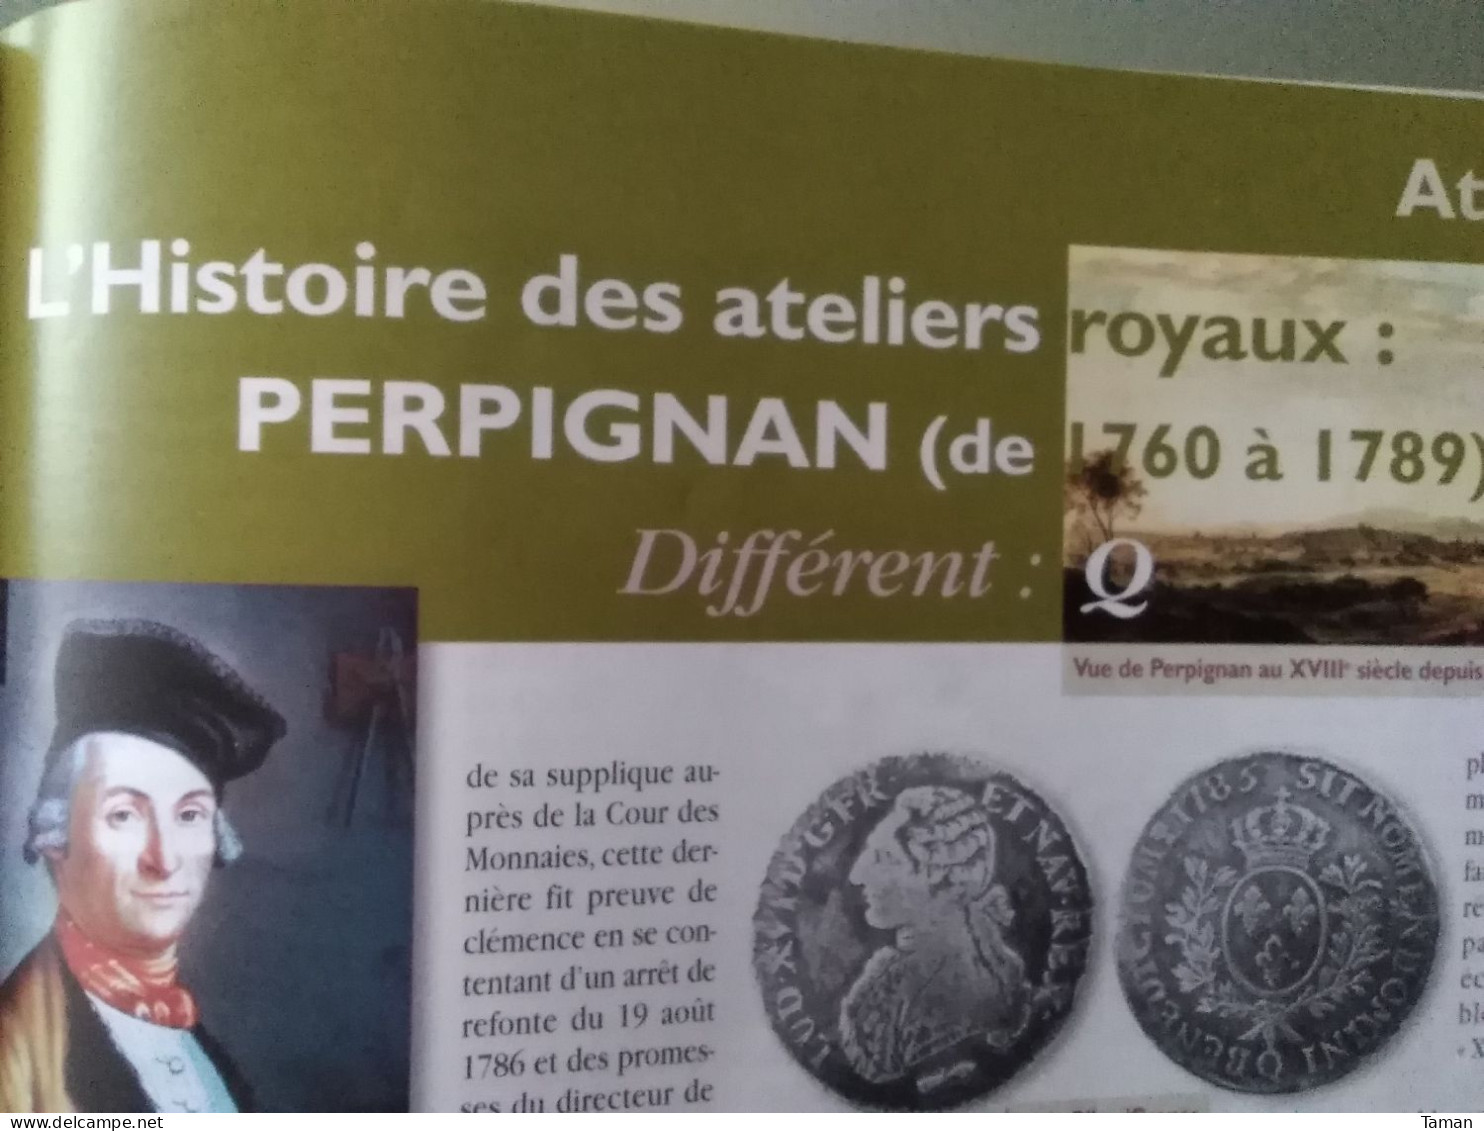 Numismatique & change - Potins gaulois - L'empire achéménide - Mérovingien - Nantes - Perpignan atelier Q